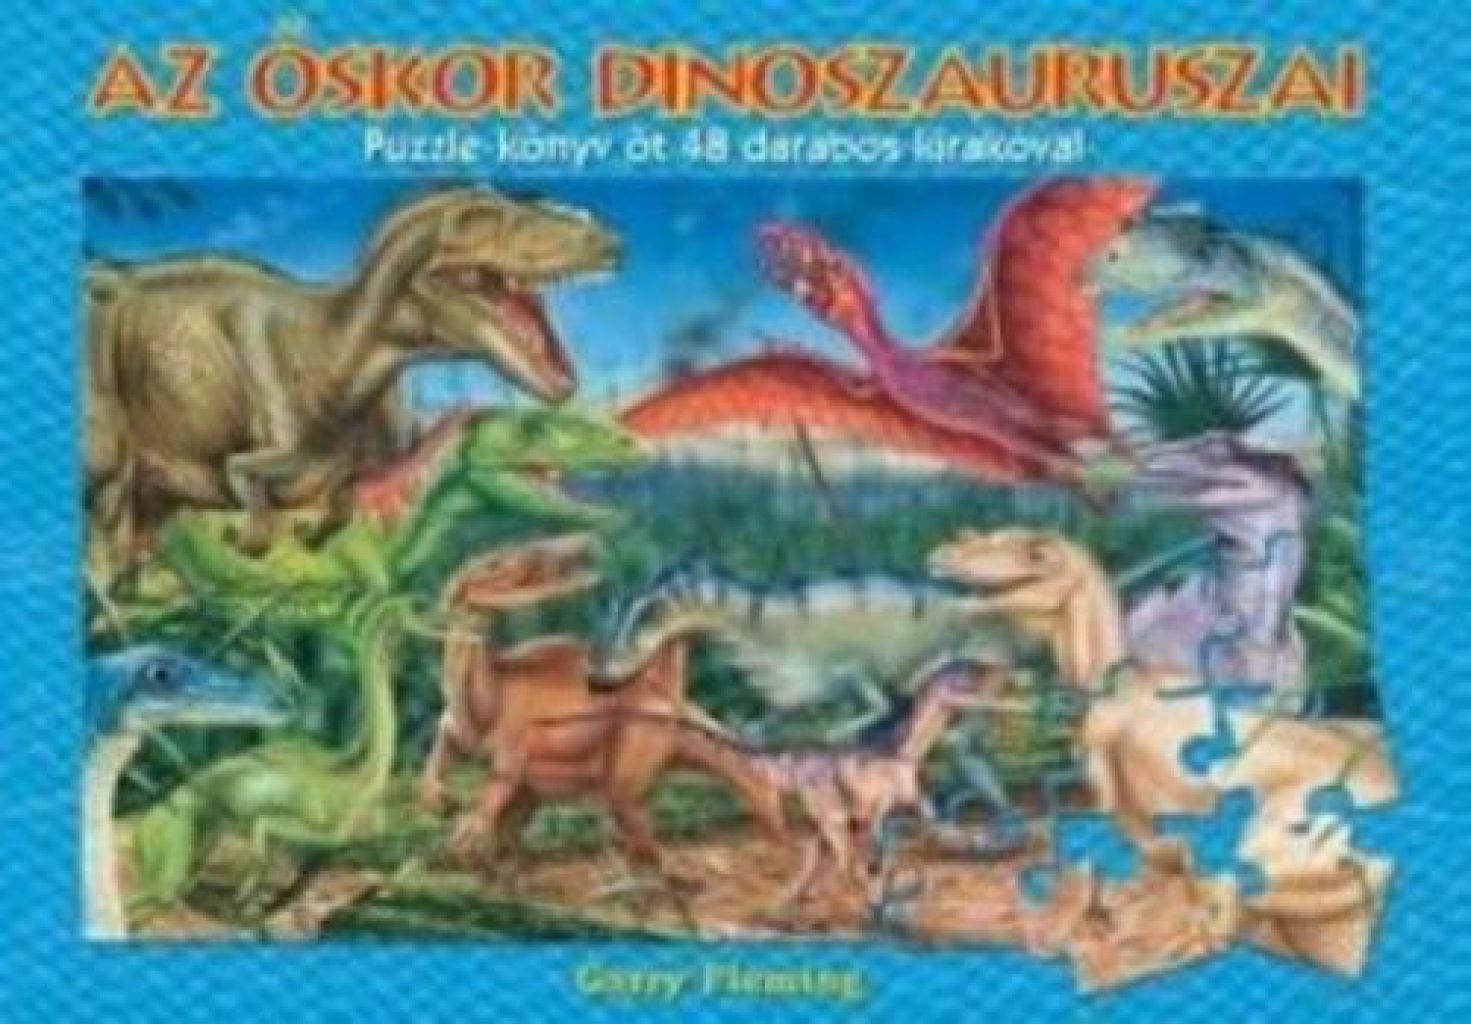 Az őskor dinoszauruszai - Puzzle-könyv öt 48 darabos kirakóval